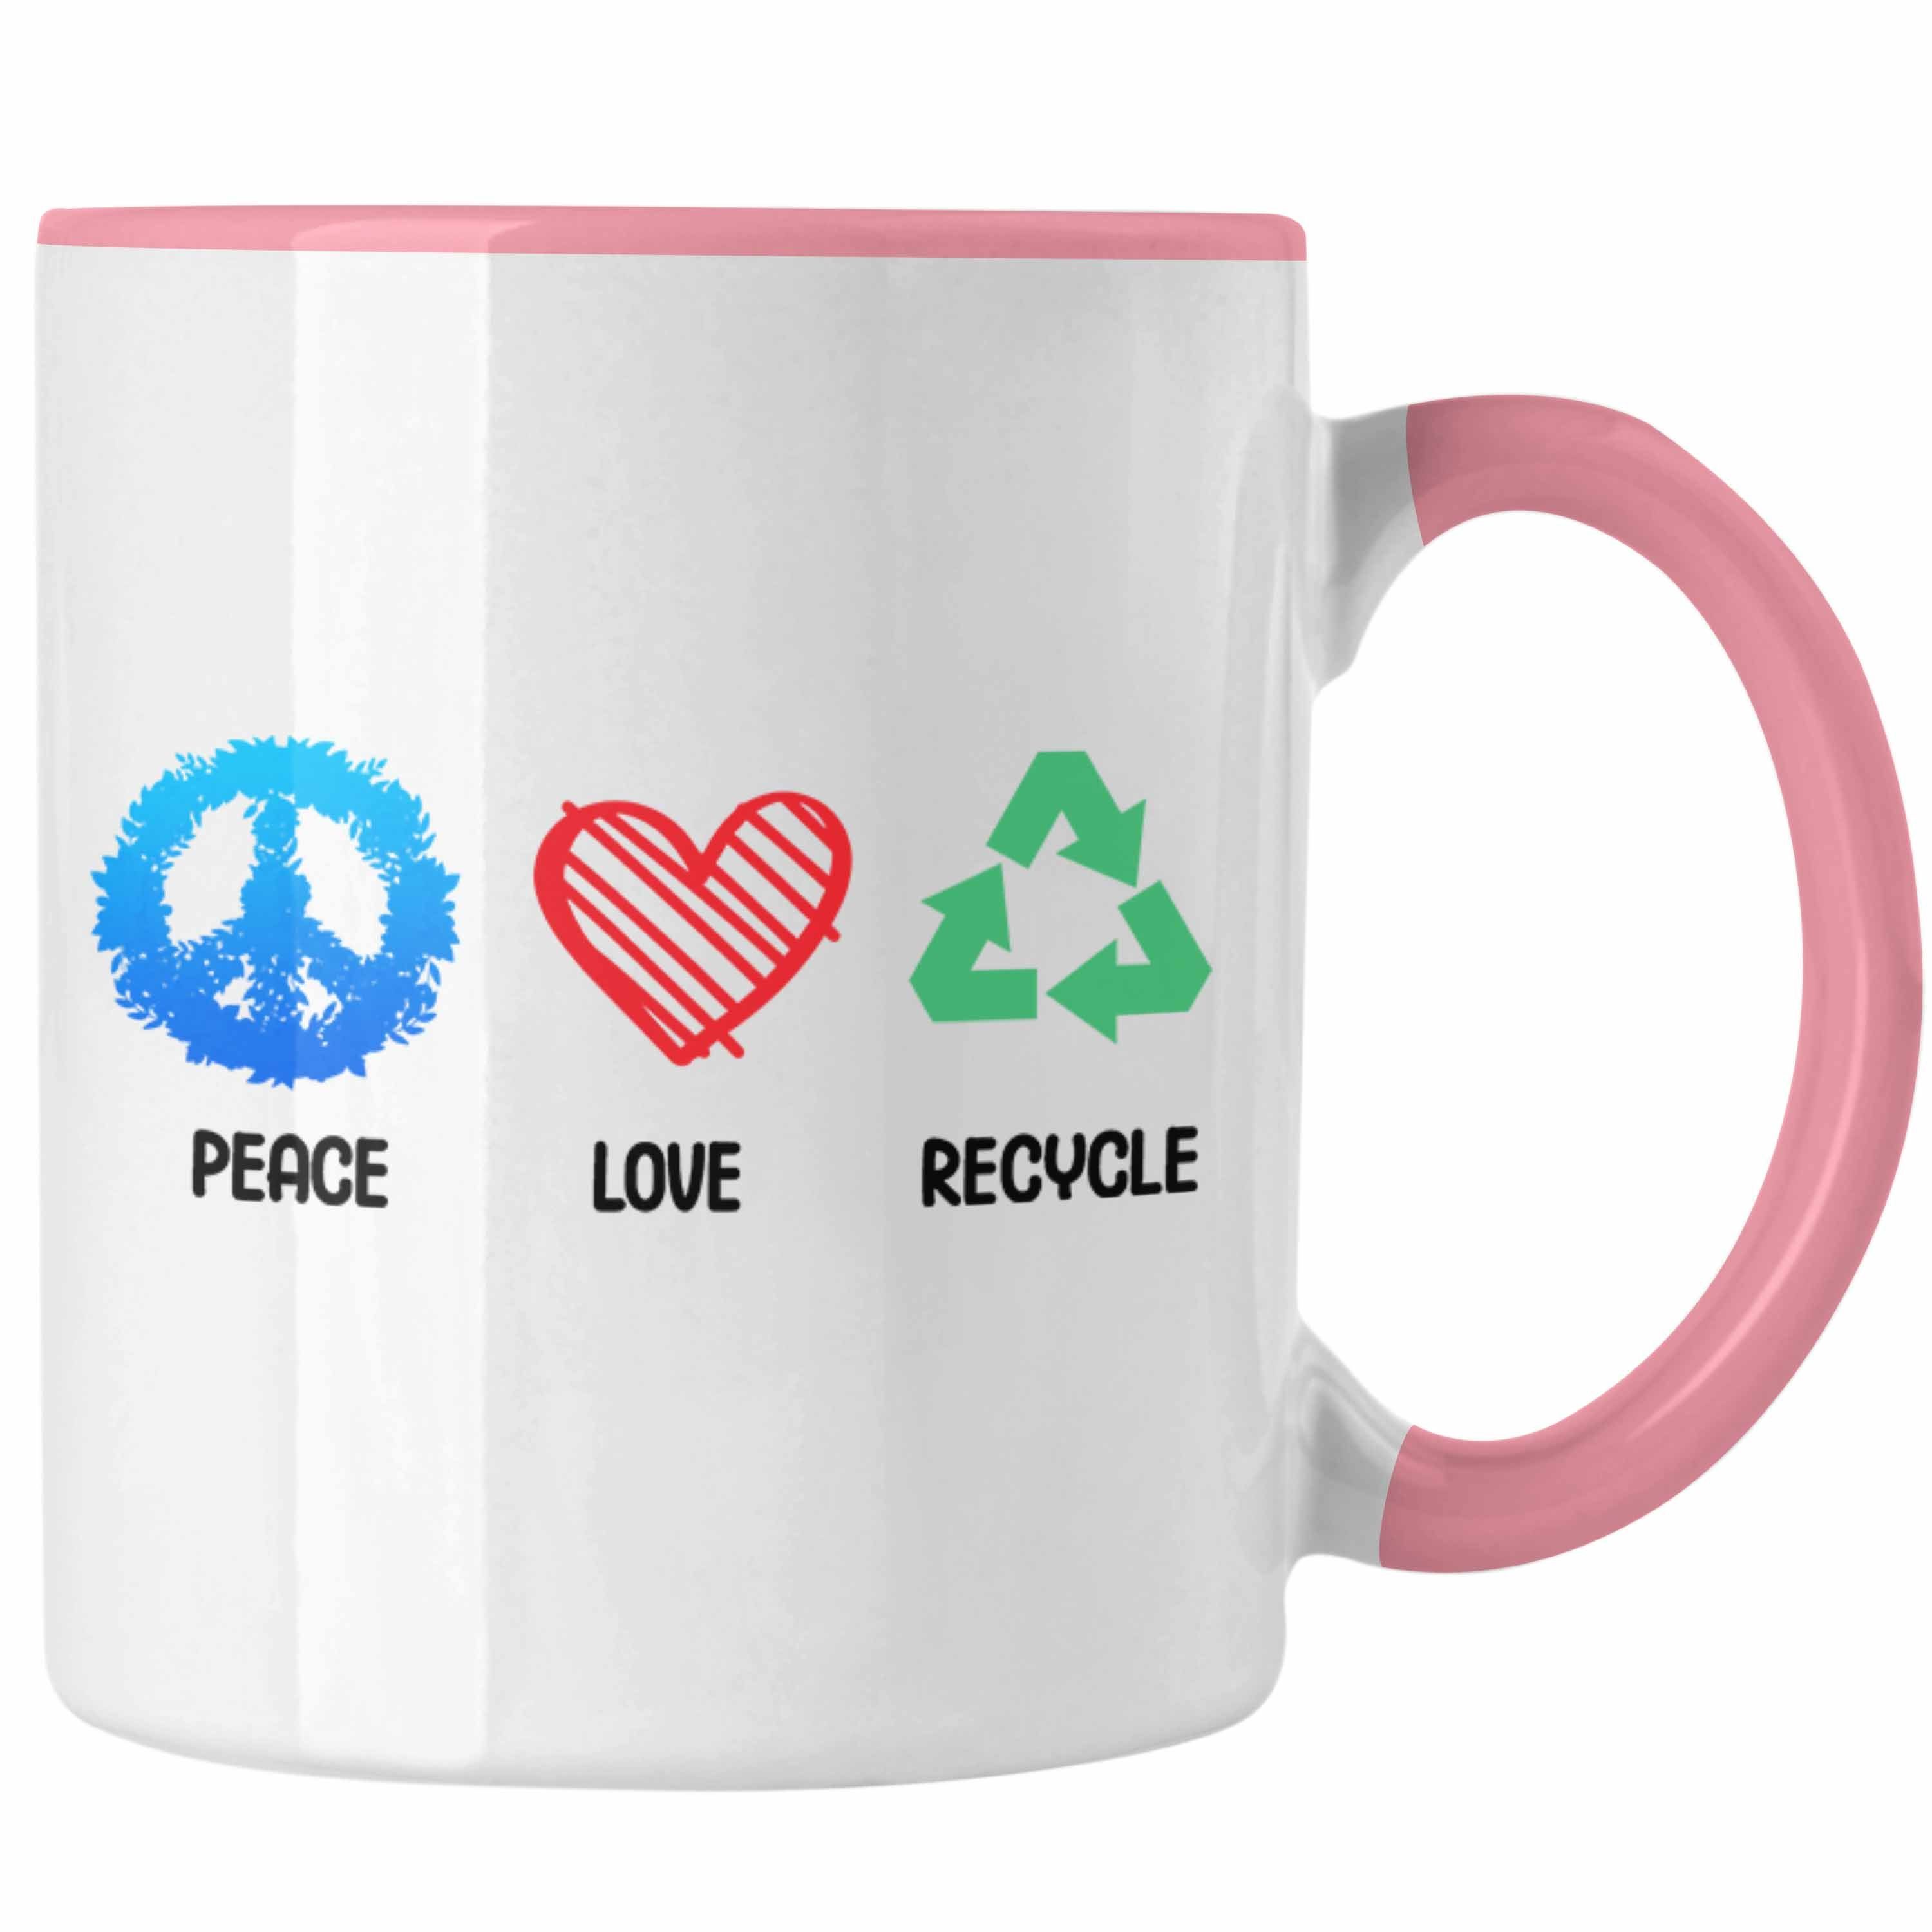 Trendation Geschenk Tasse Welt Recyceln Generation Umwelt Rosa Retten Tasse Aktivisten